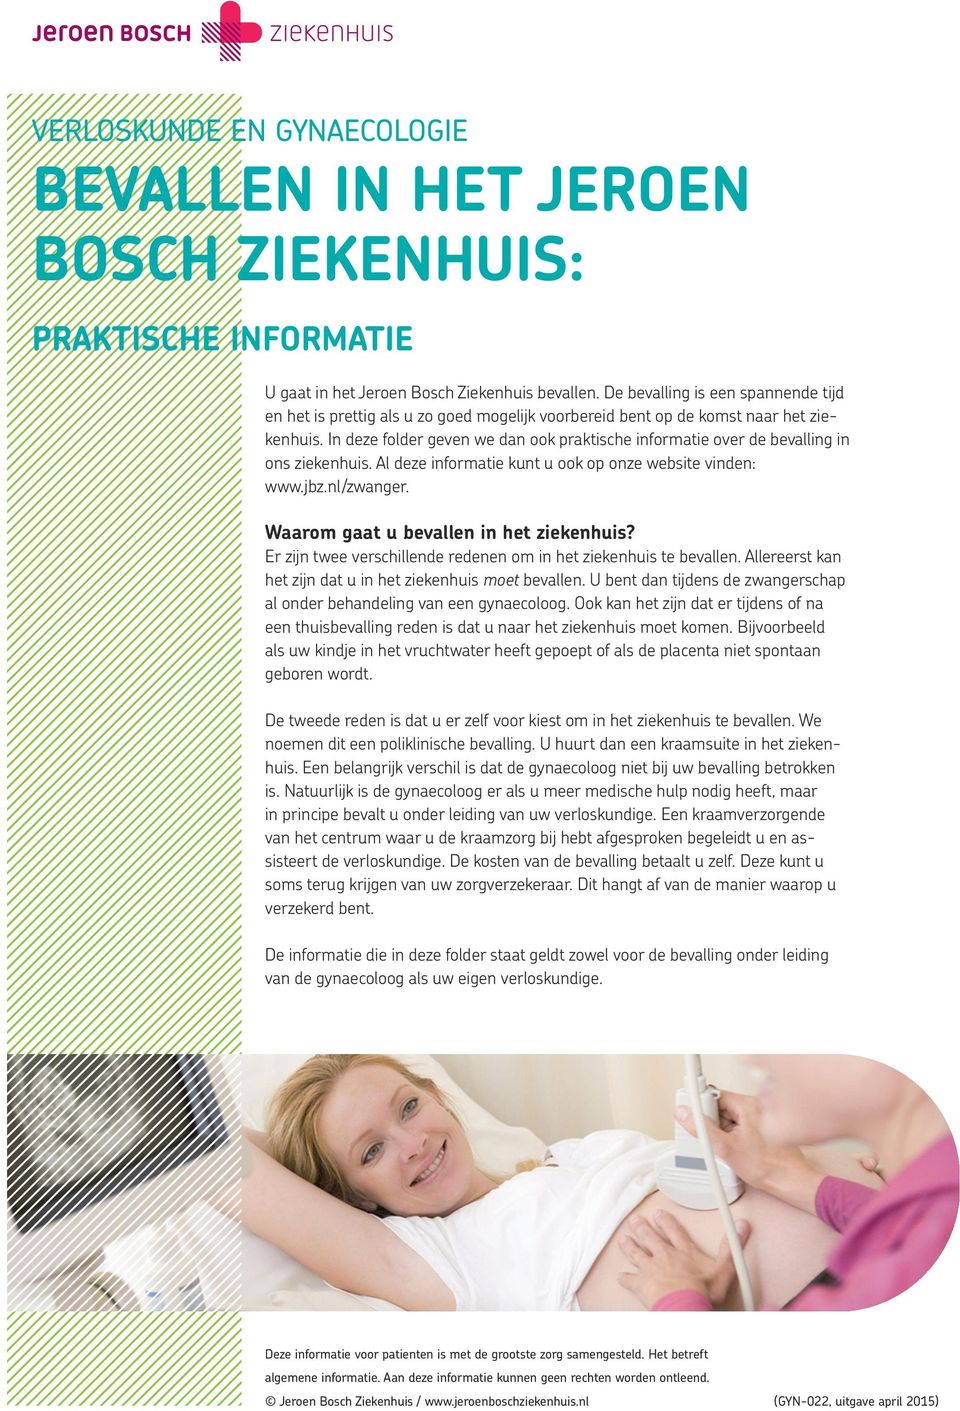 In deze folder geven we dan ook praktische informatie over de bevalling in ons ziekenhuis. Al deze informatie kunt u ook op onze website vinden: www.jbz.nl/zwanger.